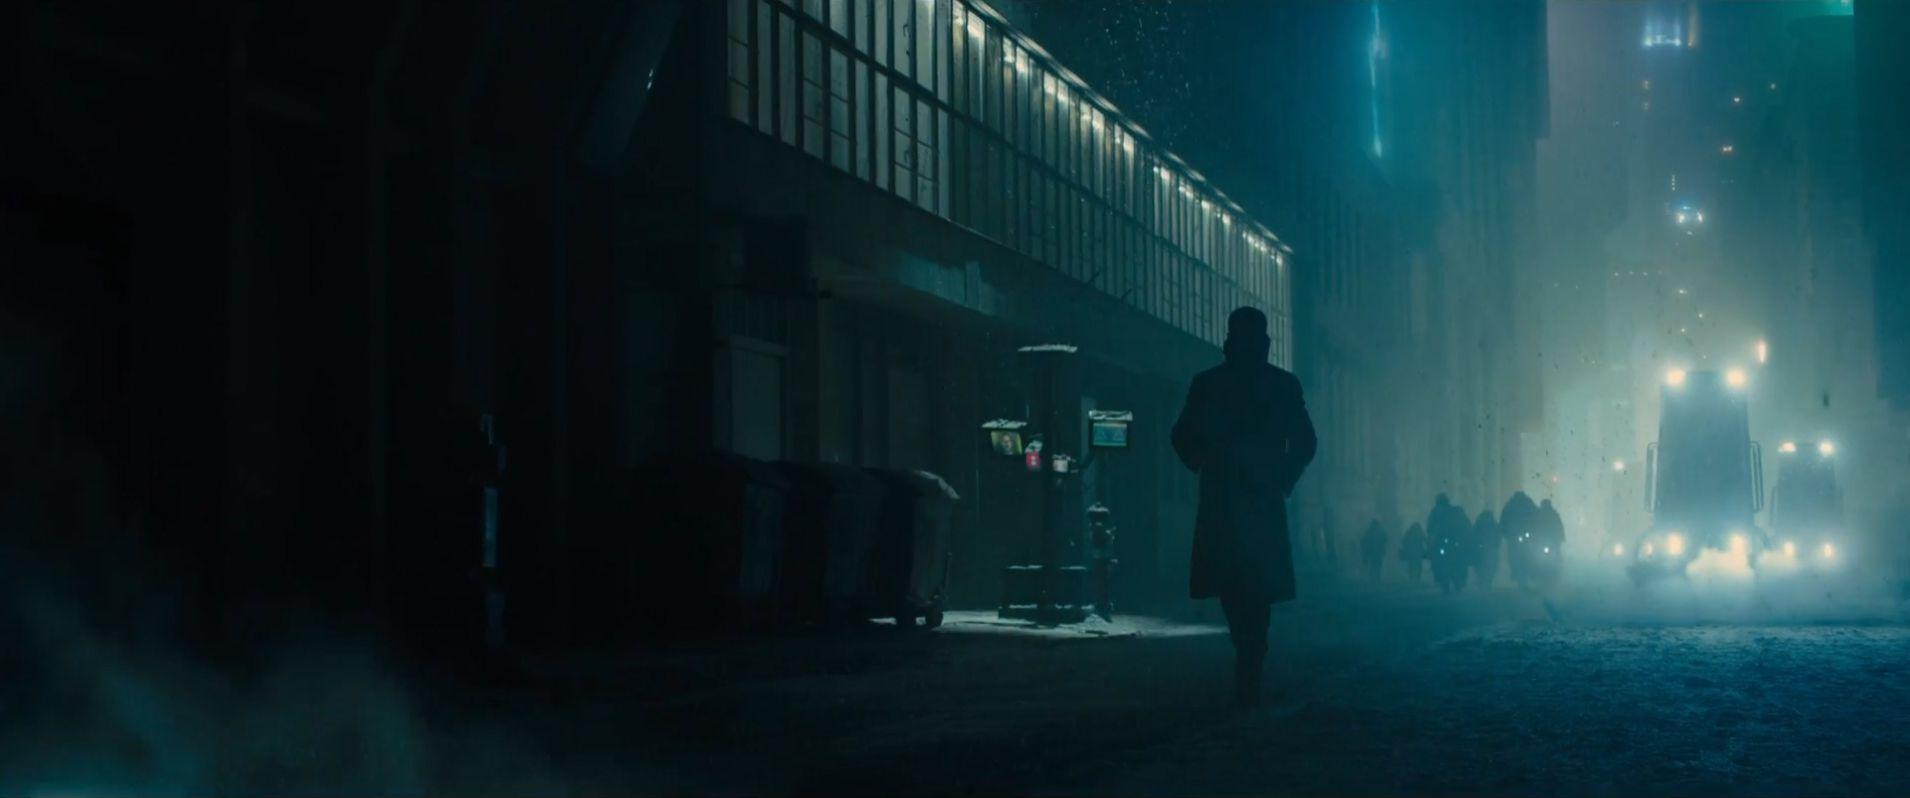 Blade Runner 2049 teaser trailer wallpaper